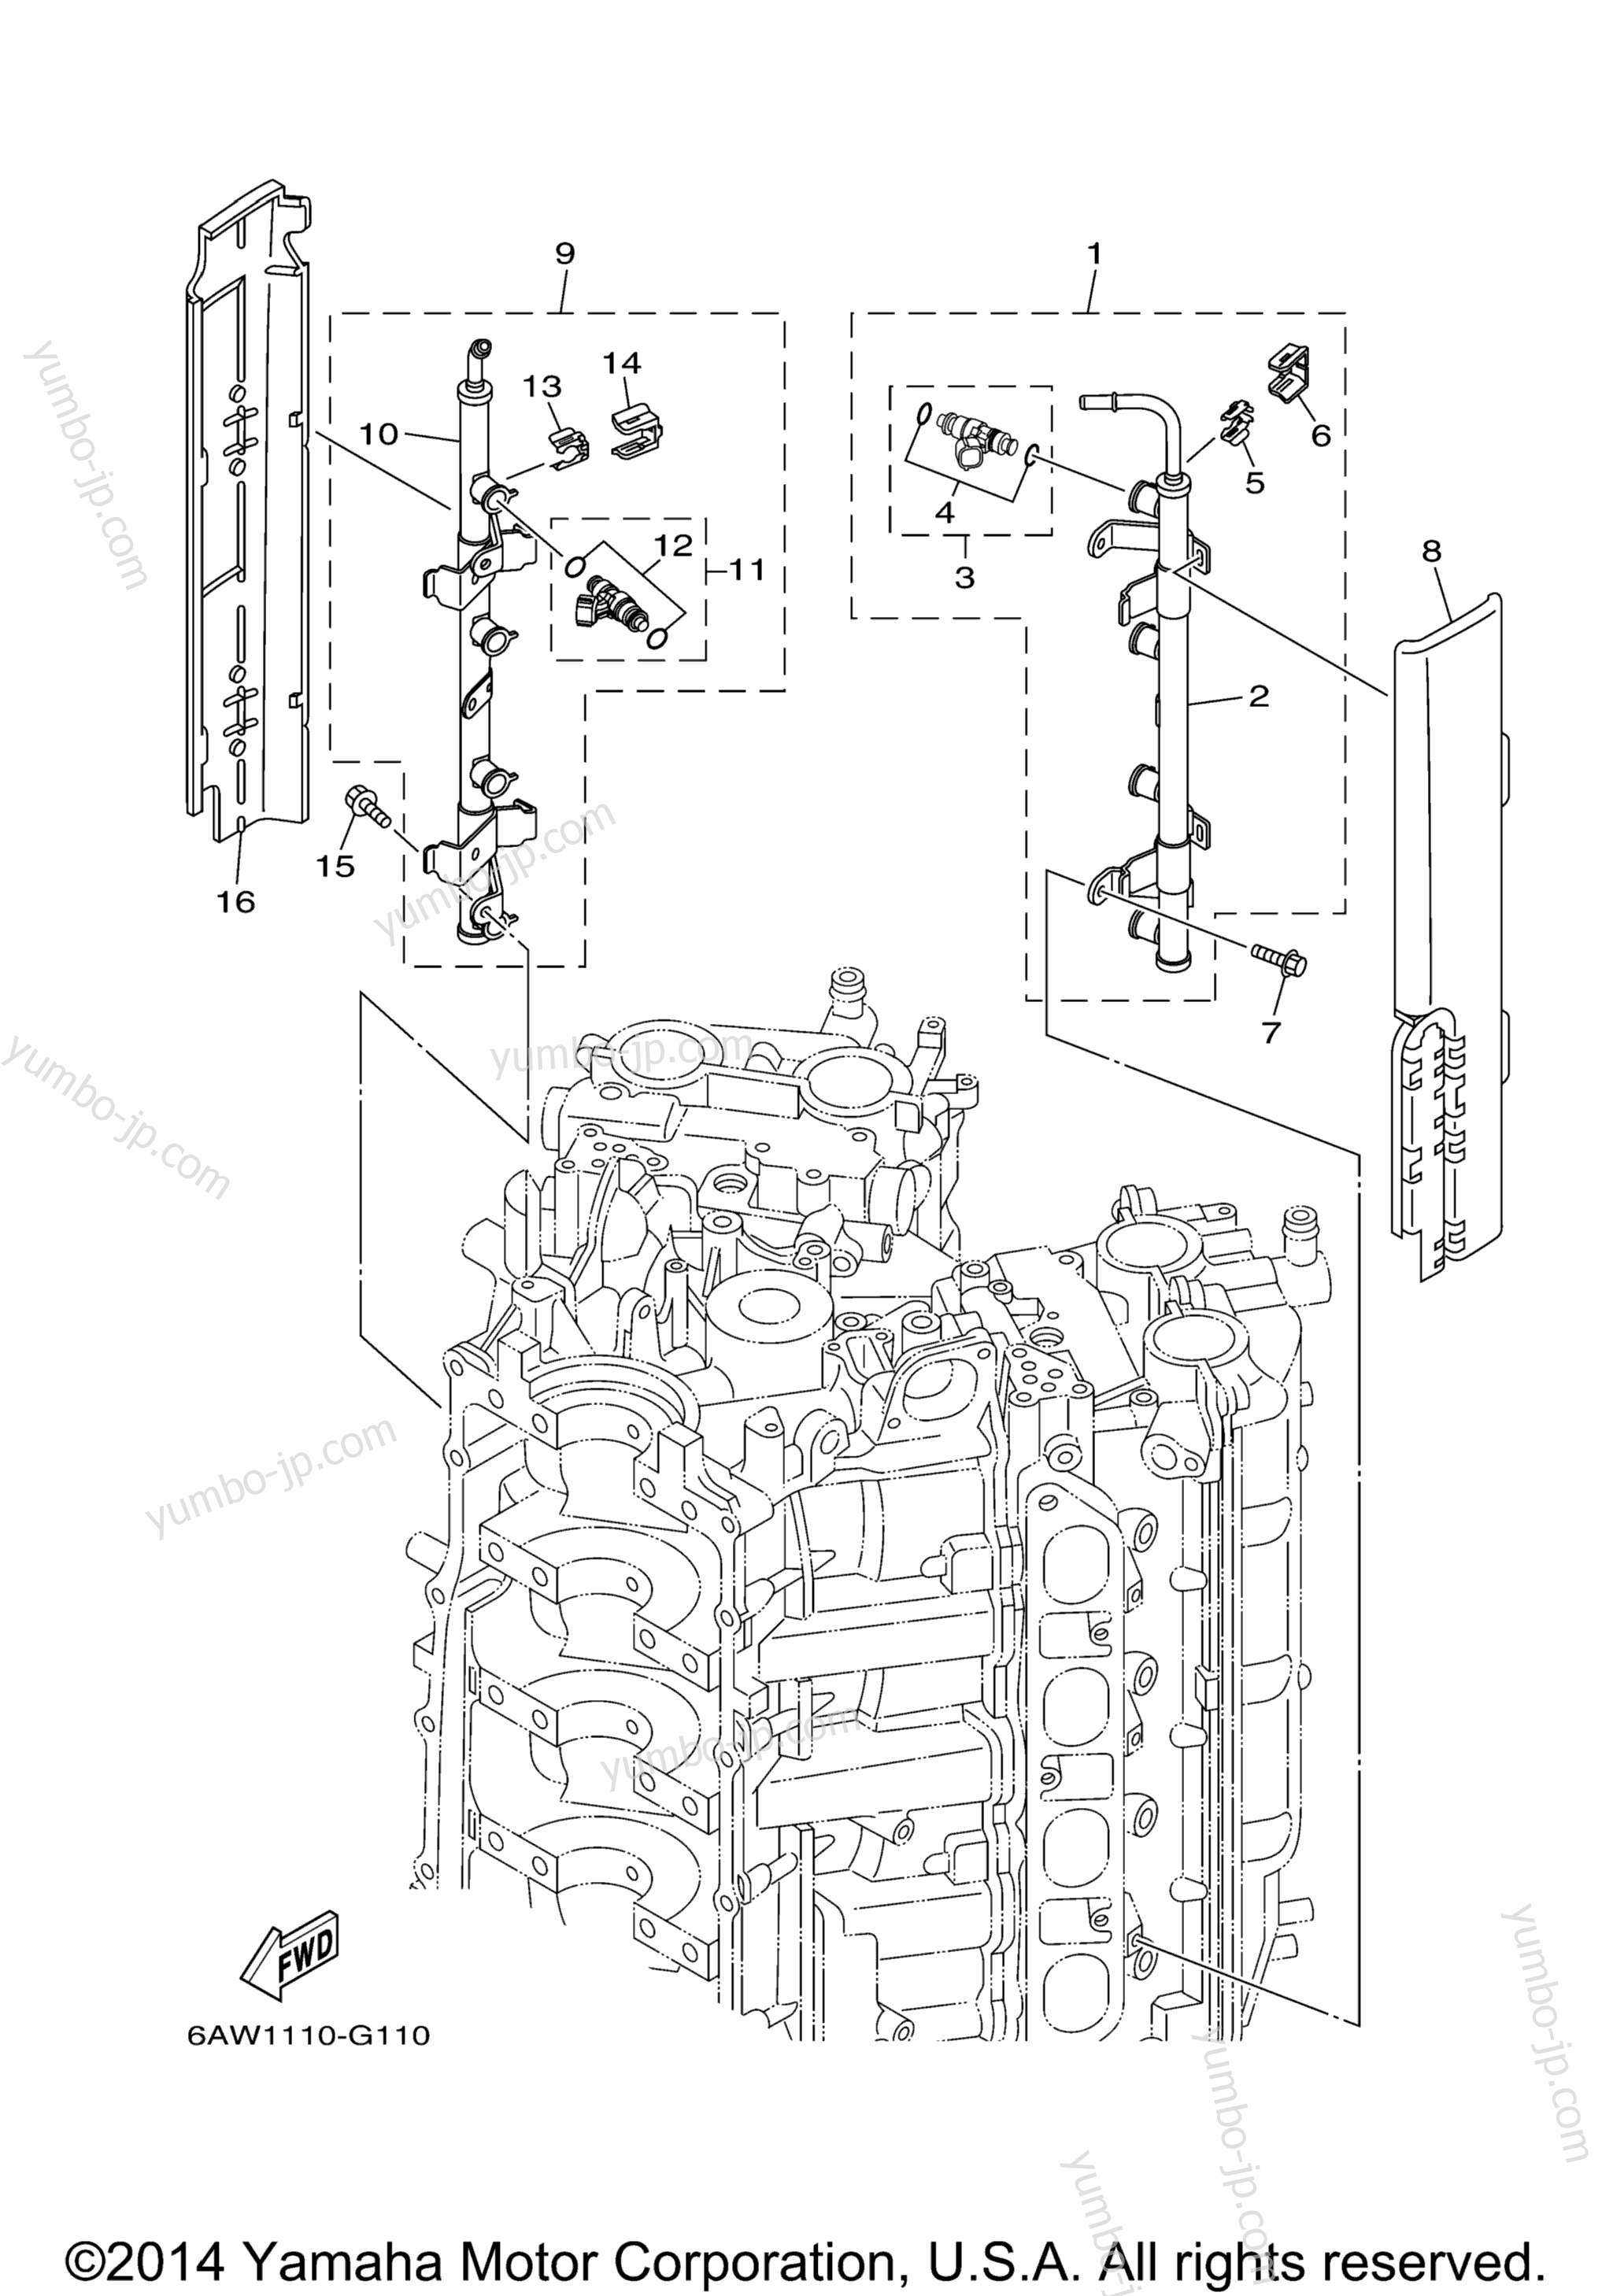 Throttle Body Assy 2 для лодочных моторов YAMAHA F300TXR (0408) 2006 г.